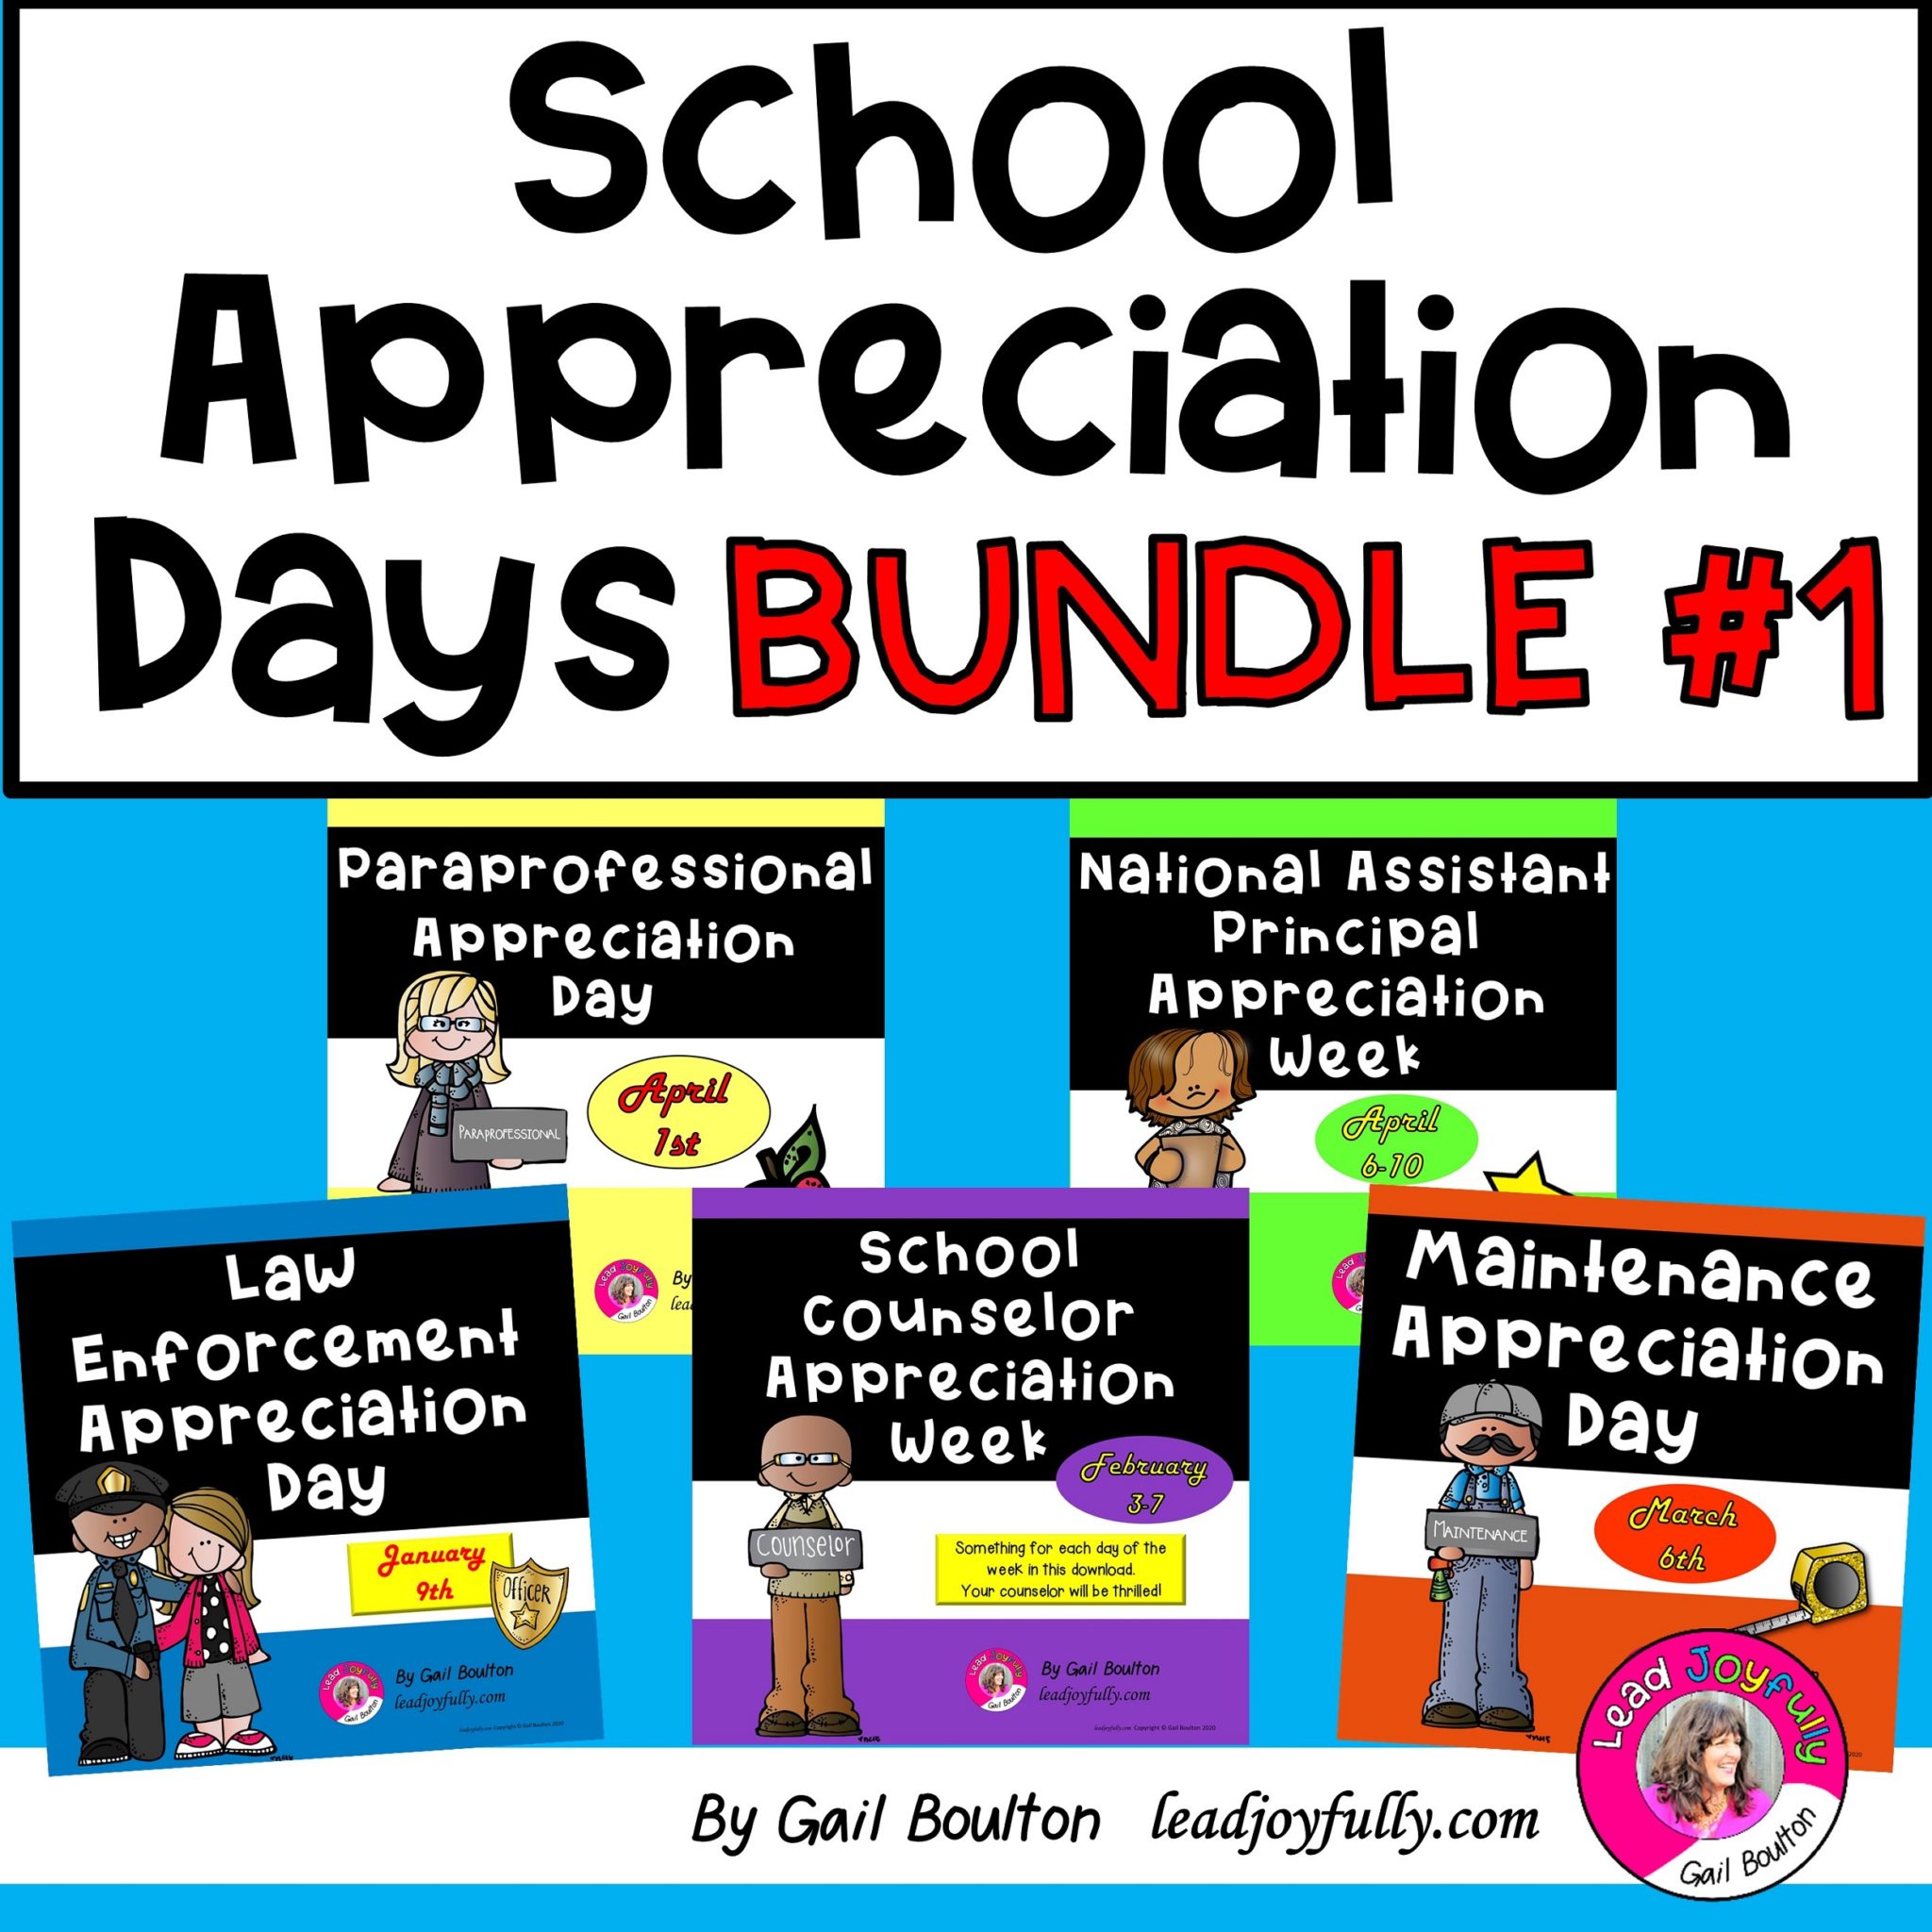 School Appreciation Days 20212022 Lead Joyfully